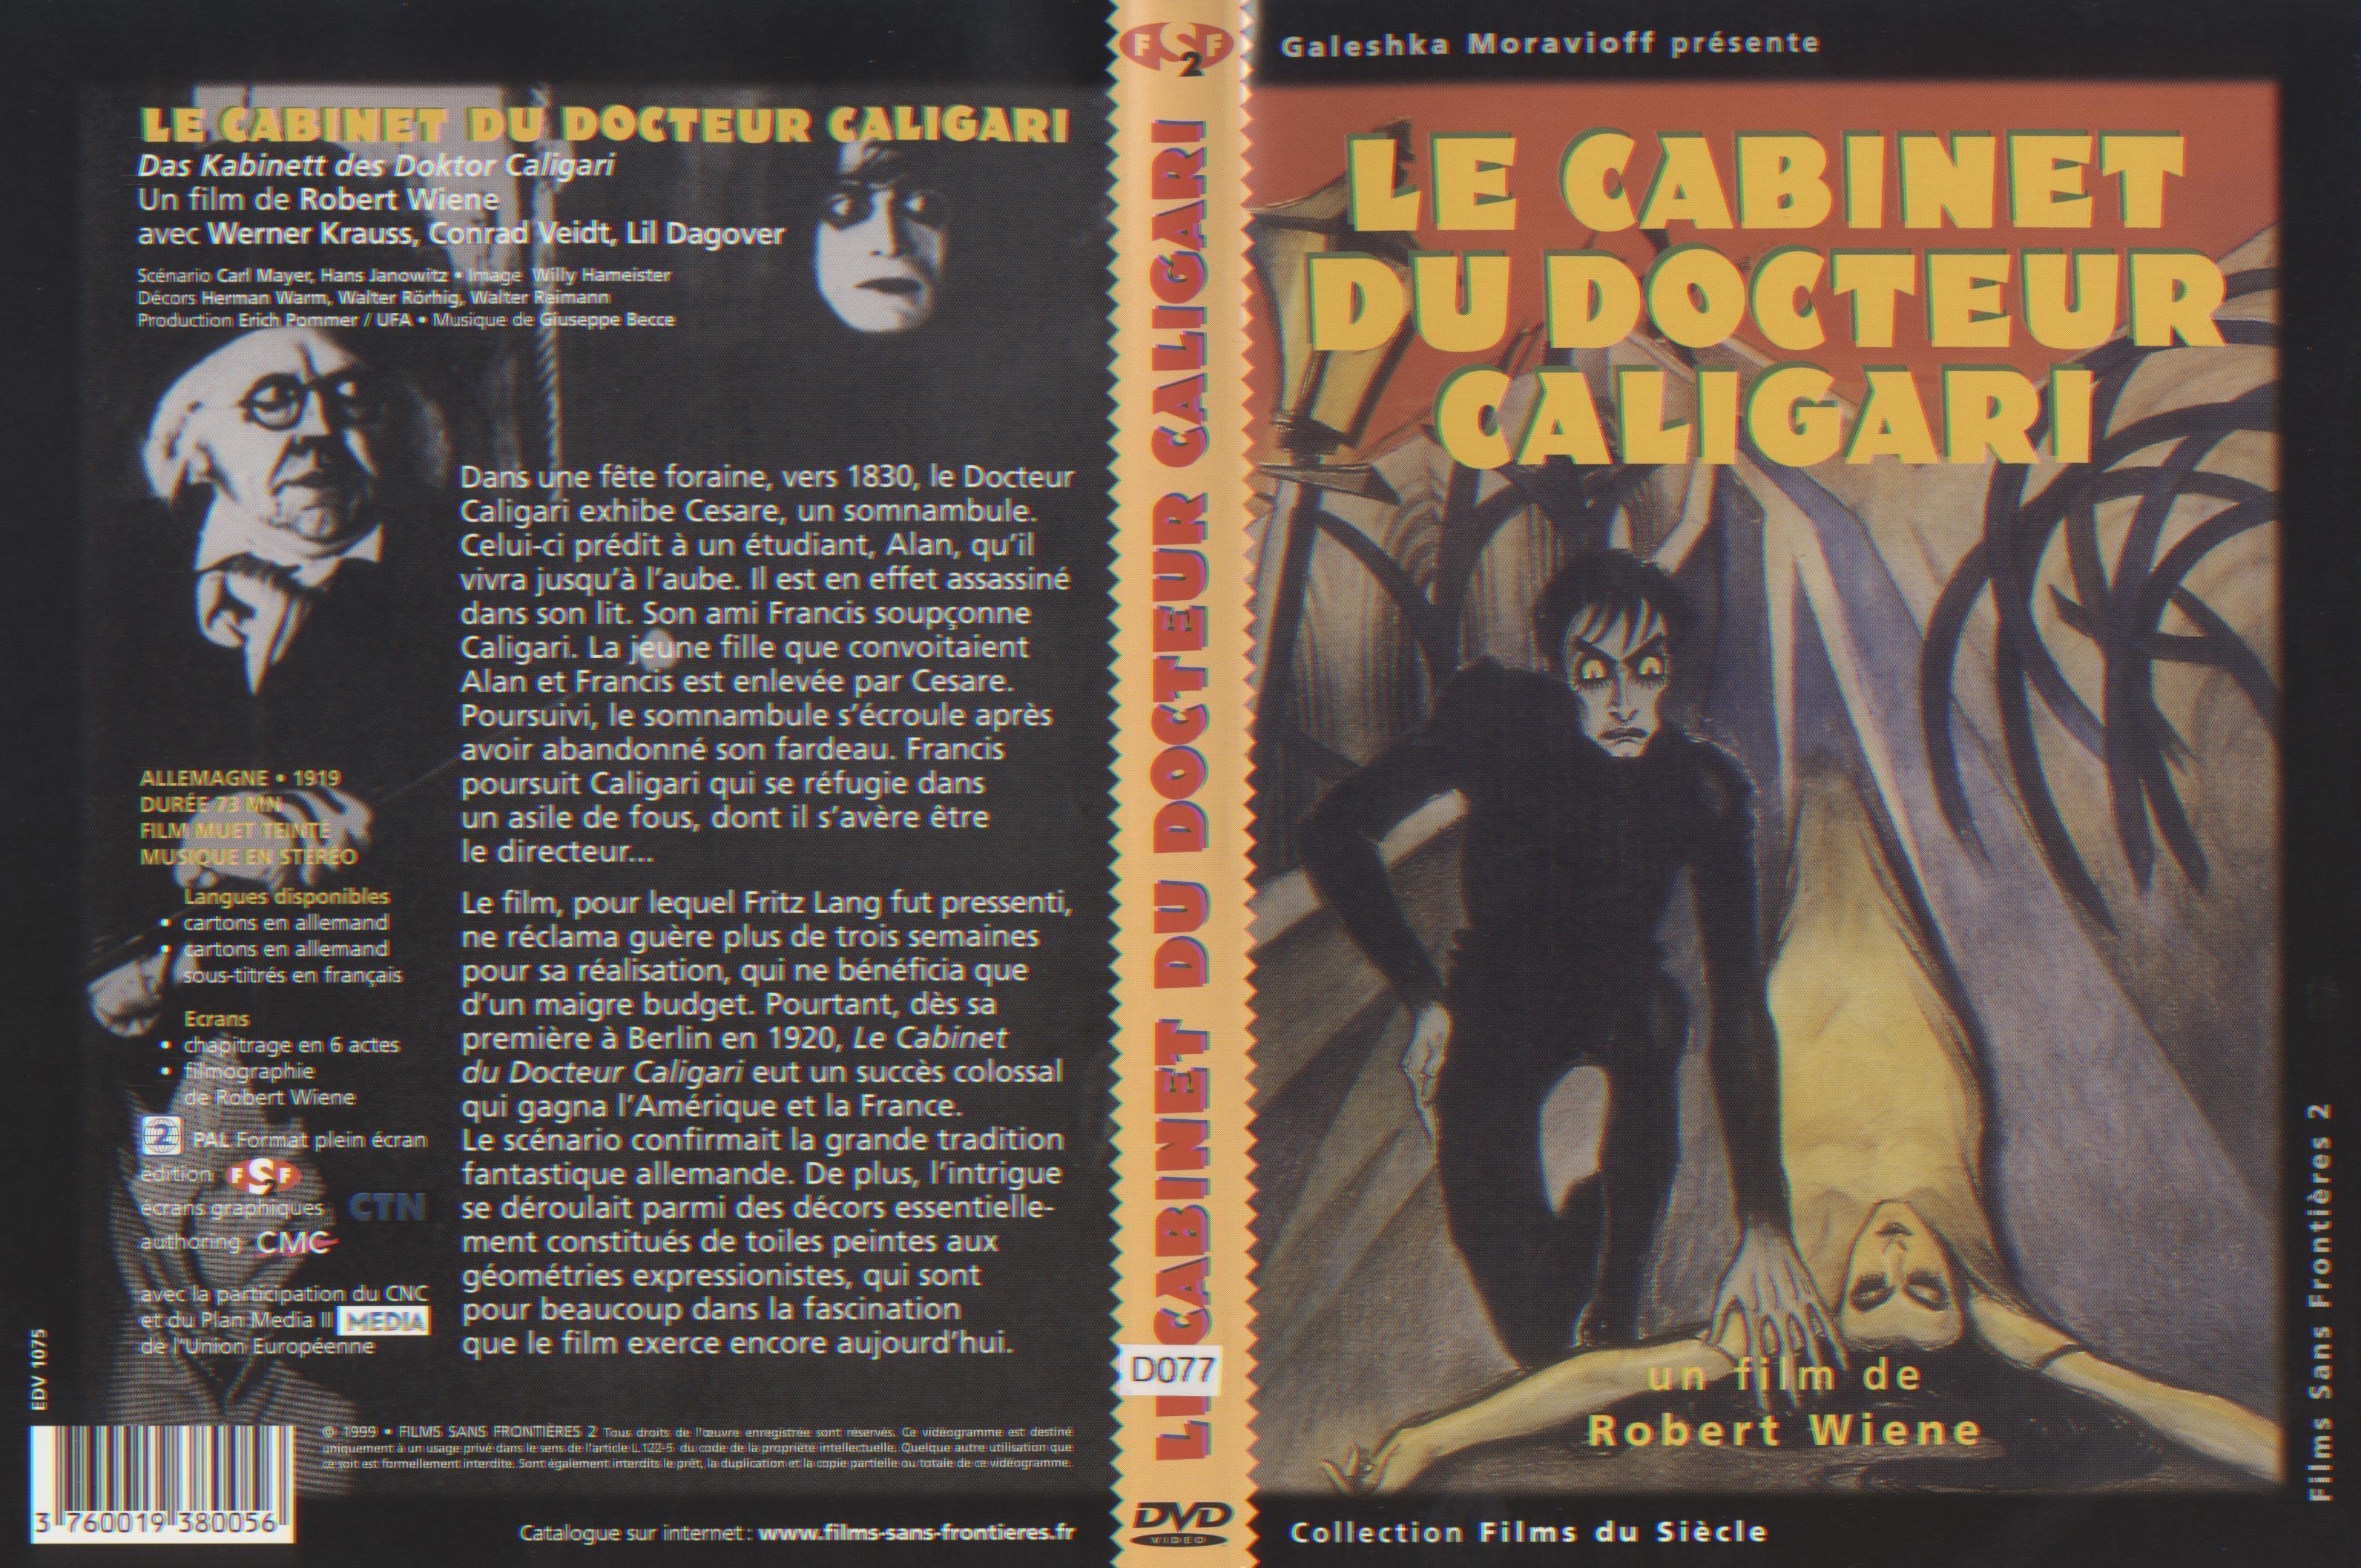 Le Cabinet Du Docteur Caligari